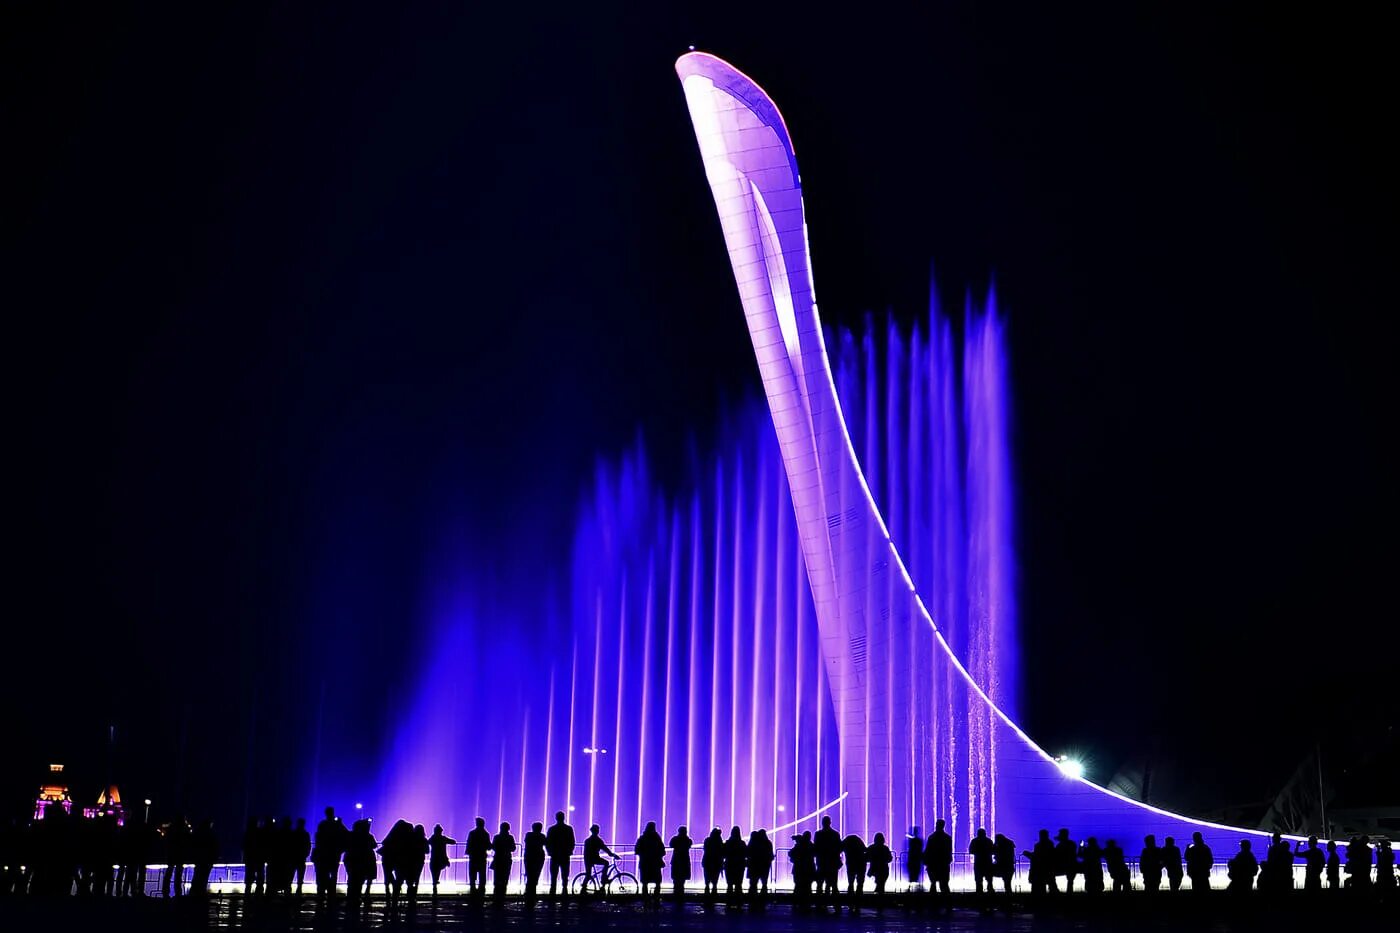 Время поющих фонтанов. Поющие фонтаны Сочи Олимпийский парк. Поющий фонтан Адлер Олимпийский парк. Сочи шоу фонтанов в Олимпийском парке. Поющий фонтан в Сочи в Олимпийском парке.